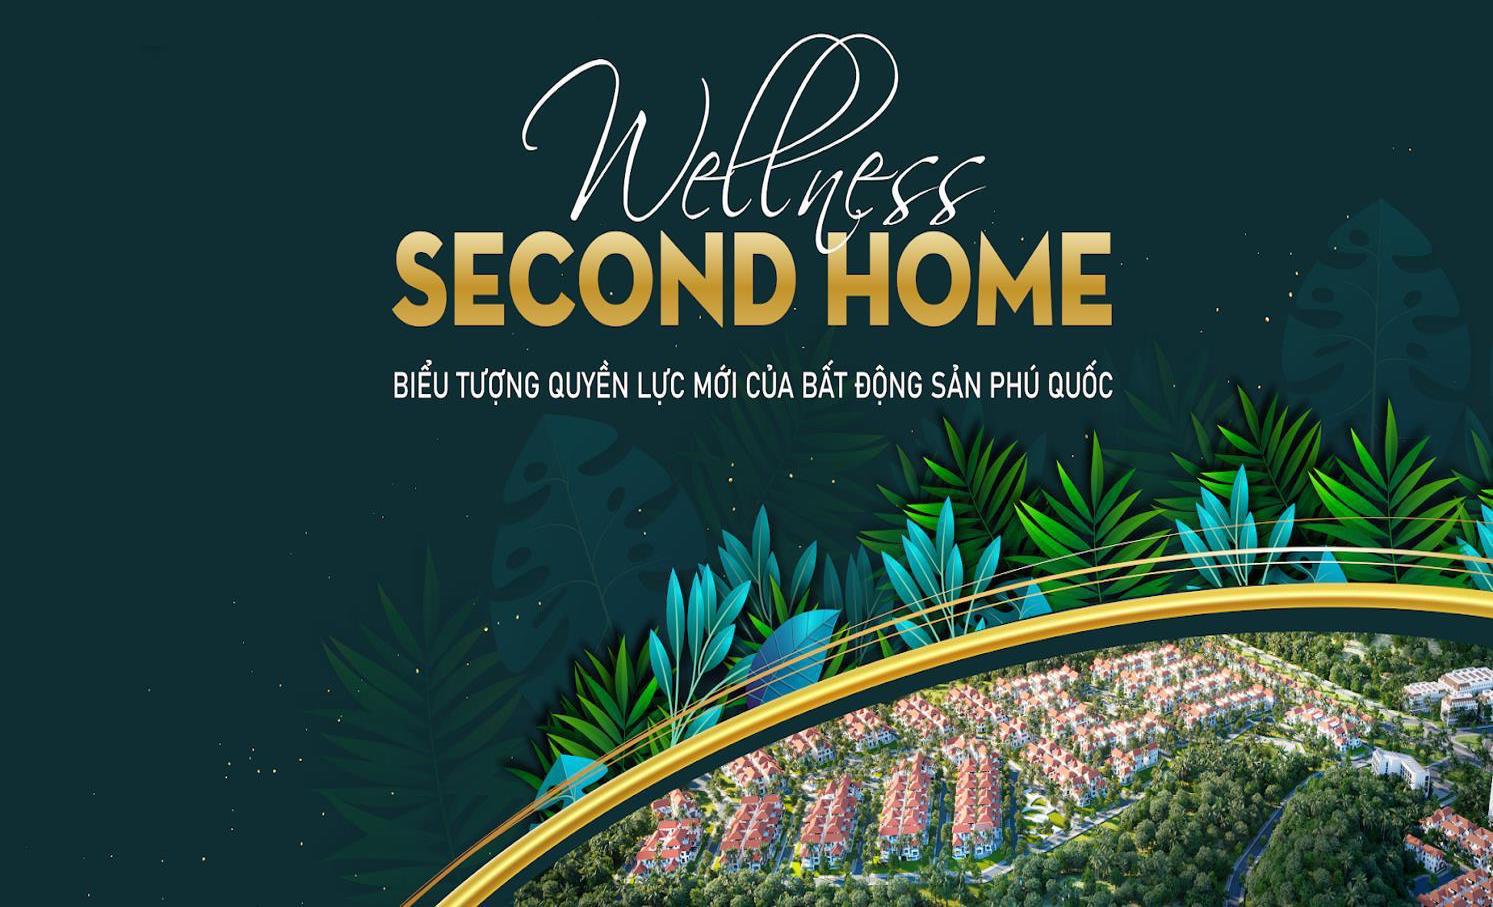 Wellness Second Home biểu tượng quyền lực mới